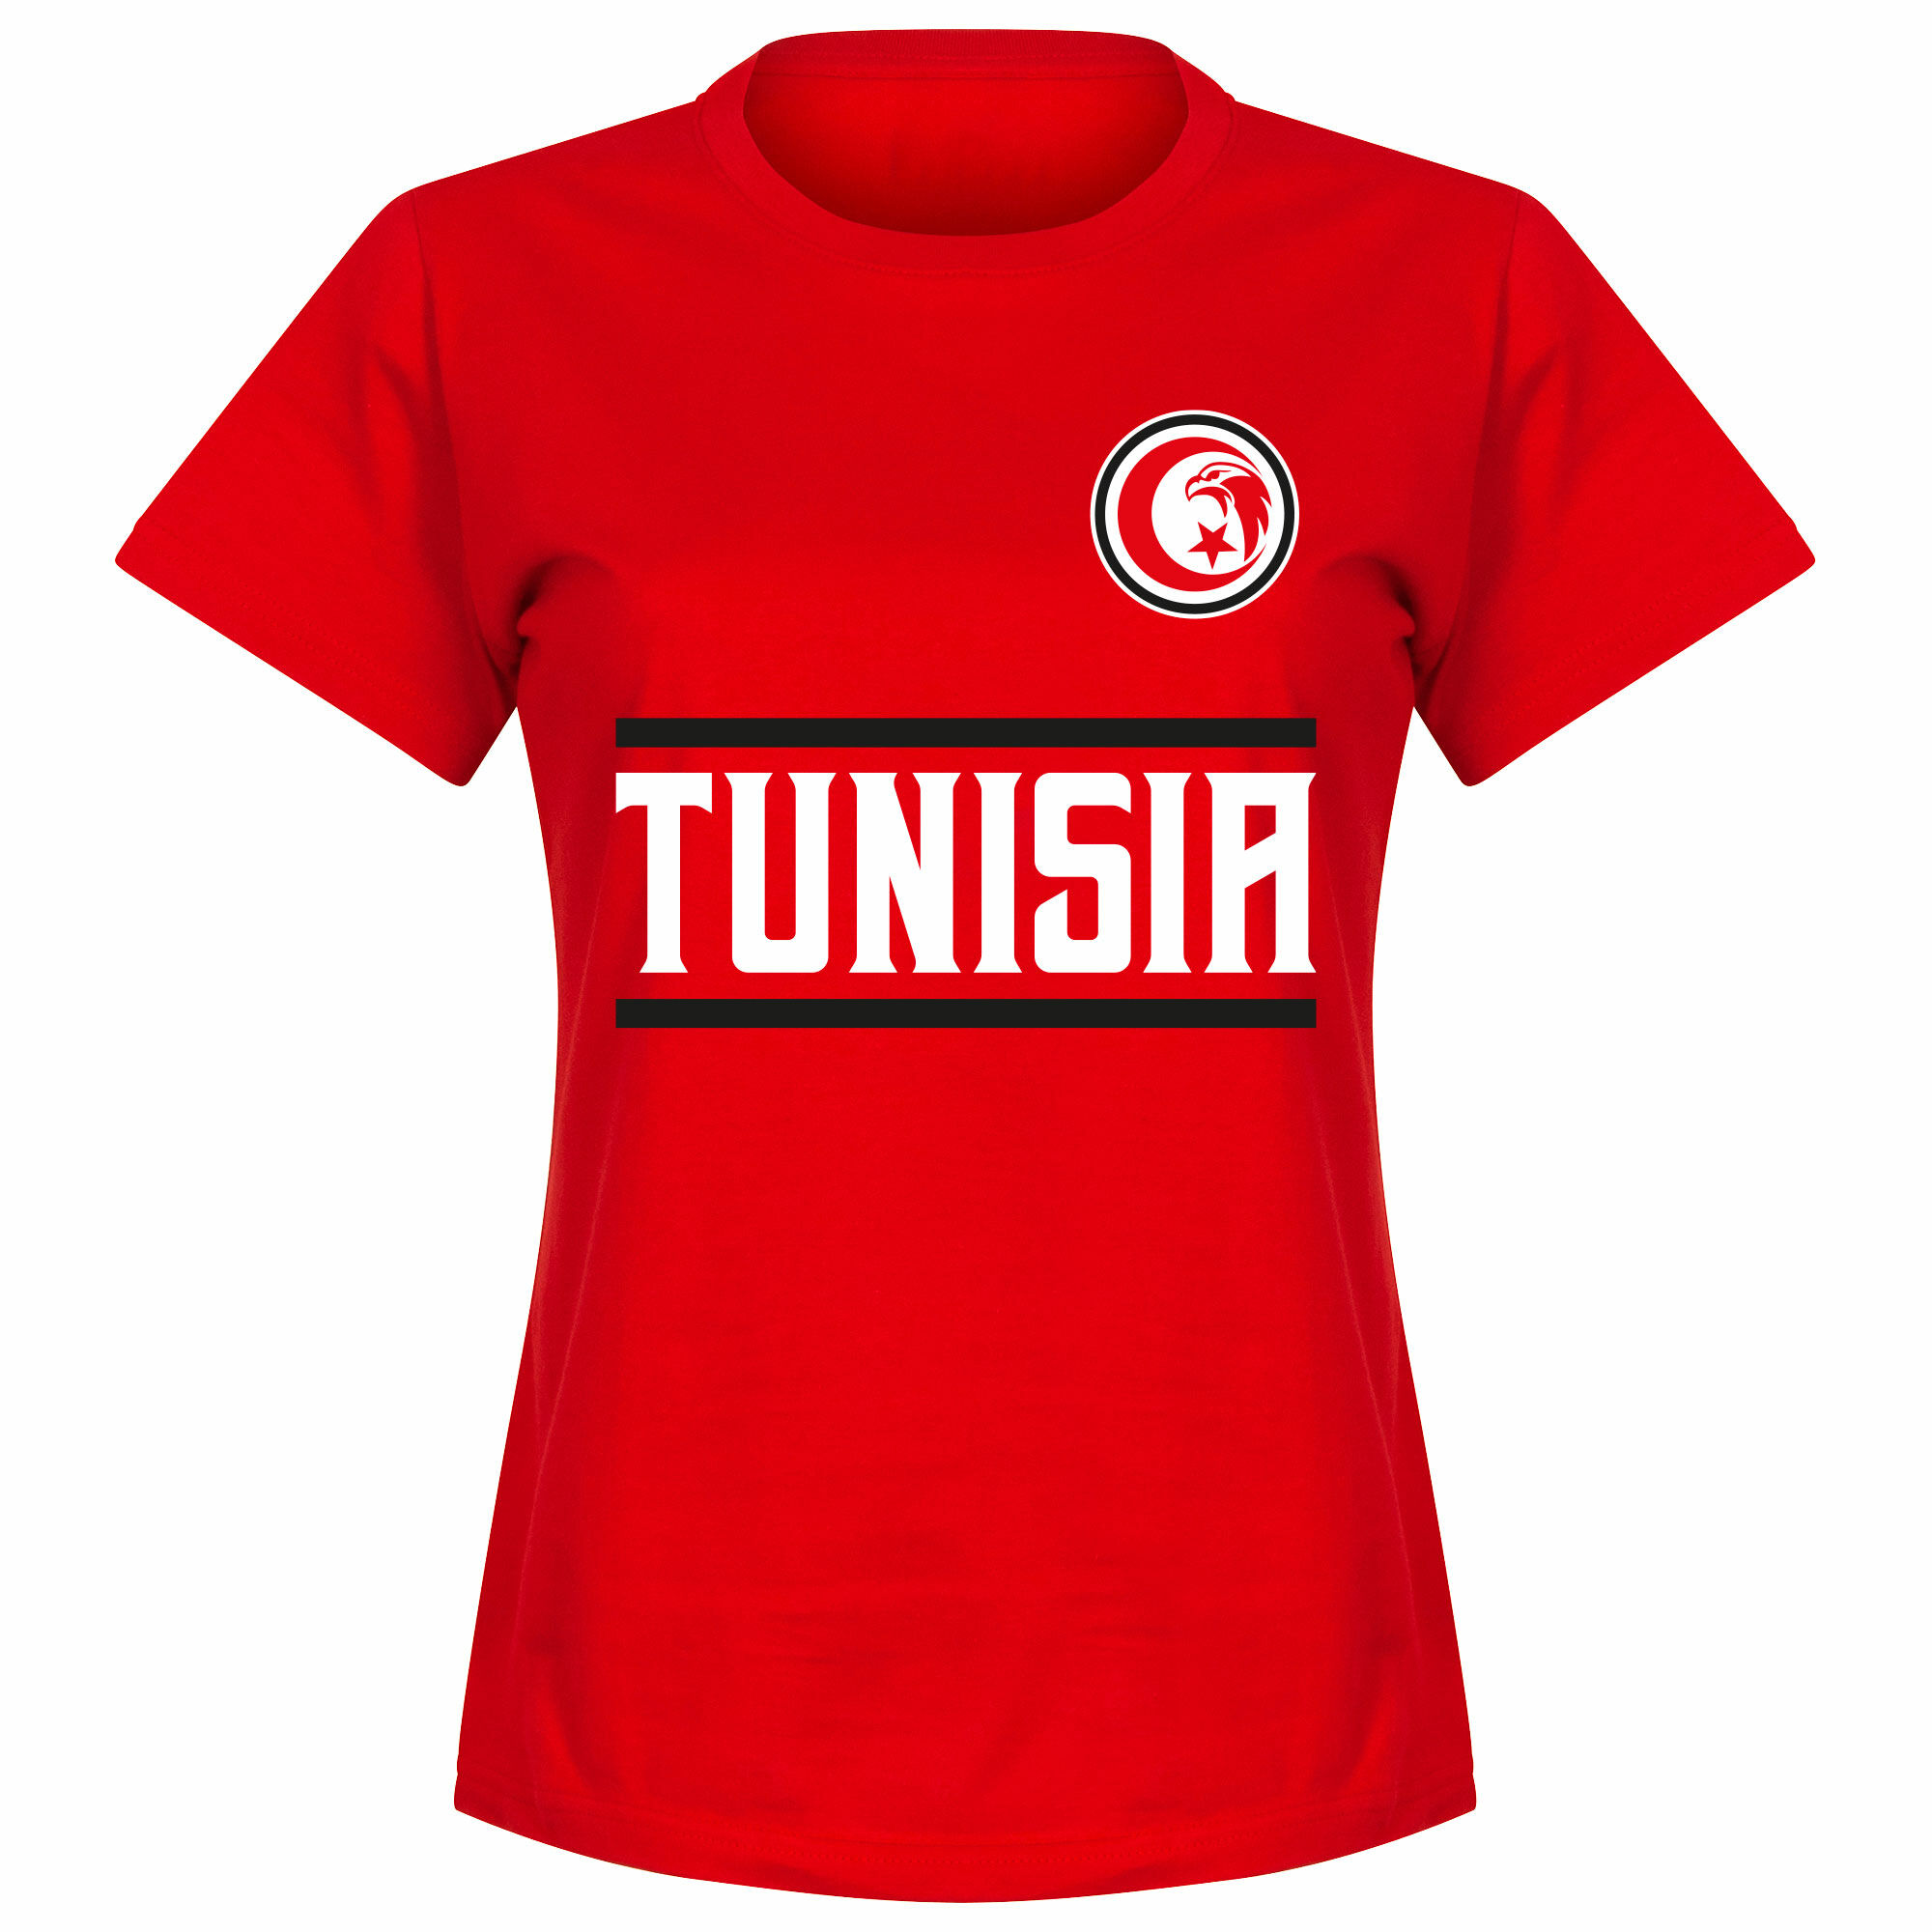 Tunisko - Tričko dámské - červené